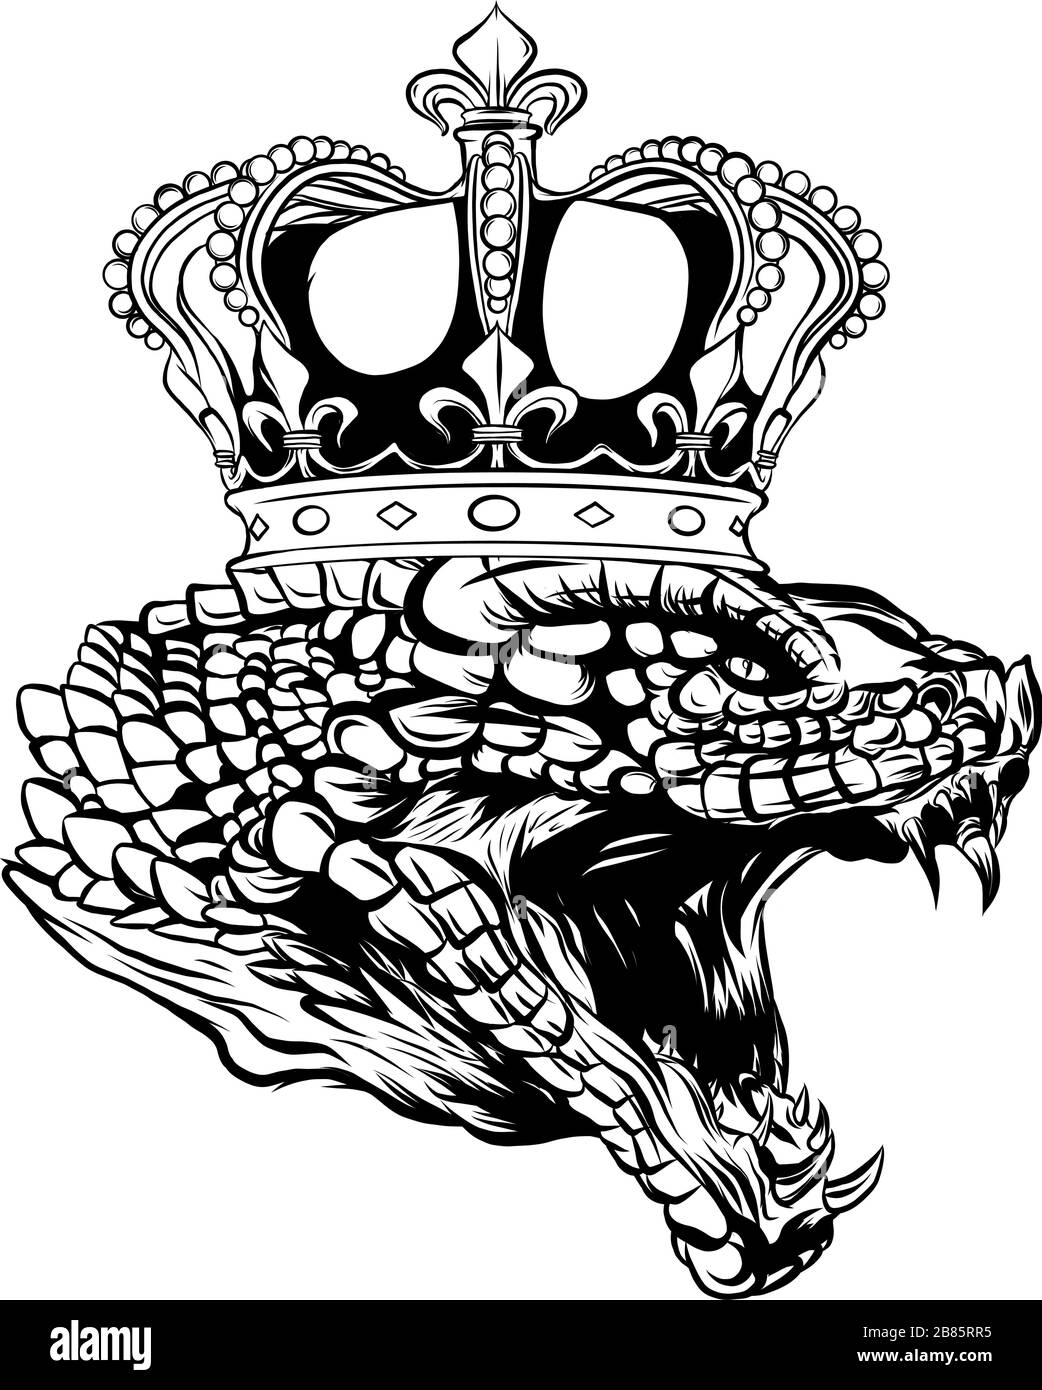 Disegnate a mano vintage Snake con corona tattoo arte. Illustrazione di vettore isolato. Età di design in stile lineare. Illustrazione Vettoriale